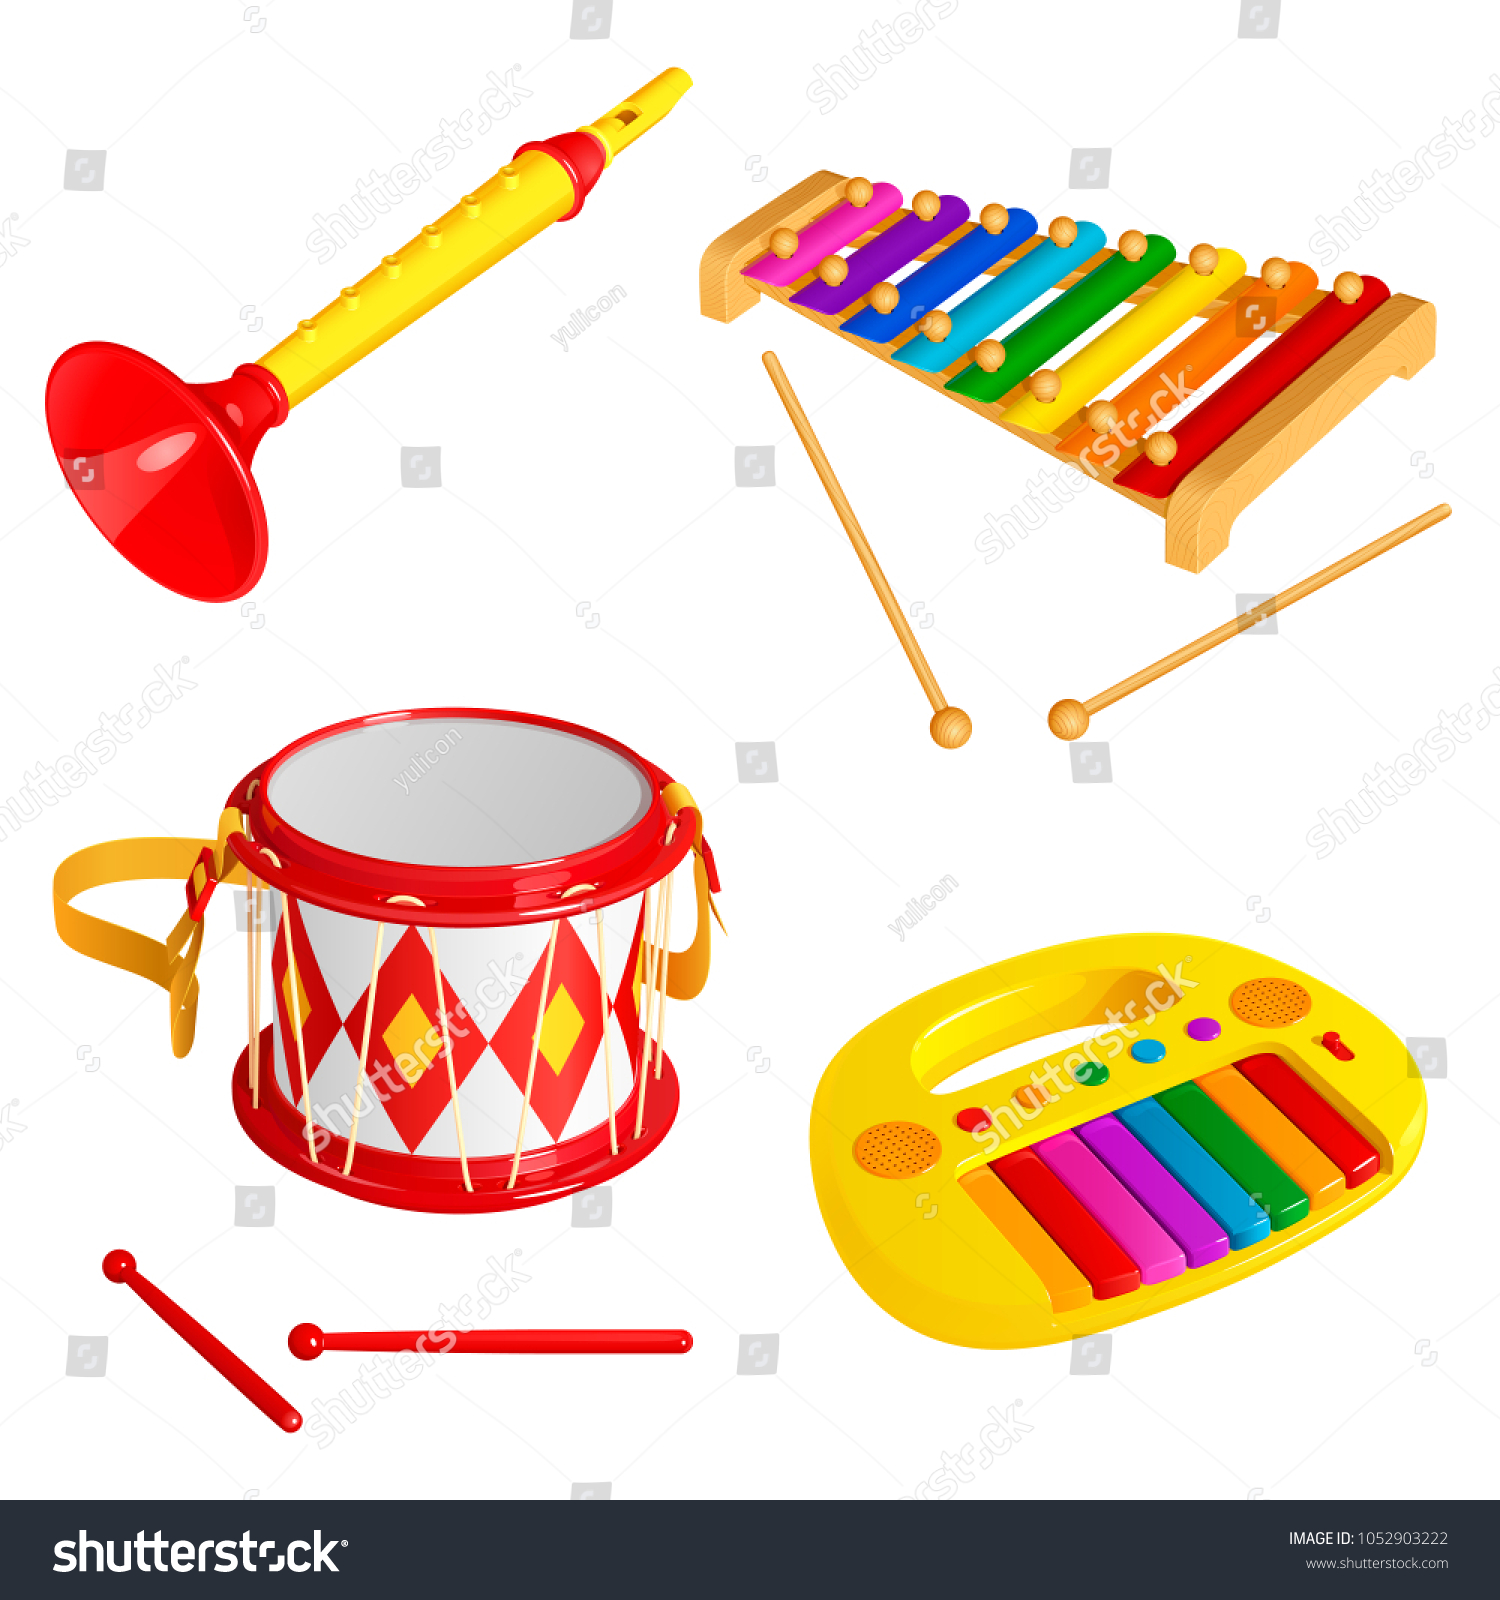 children's toy musical instruments